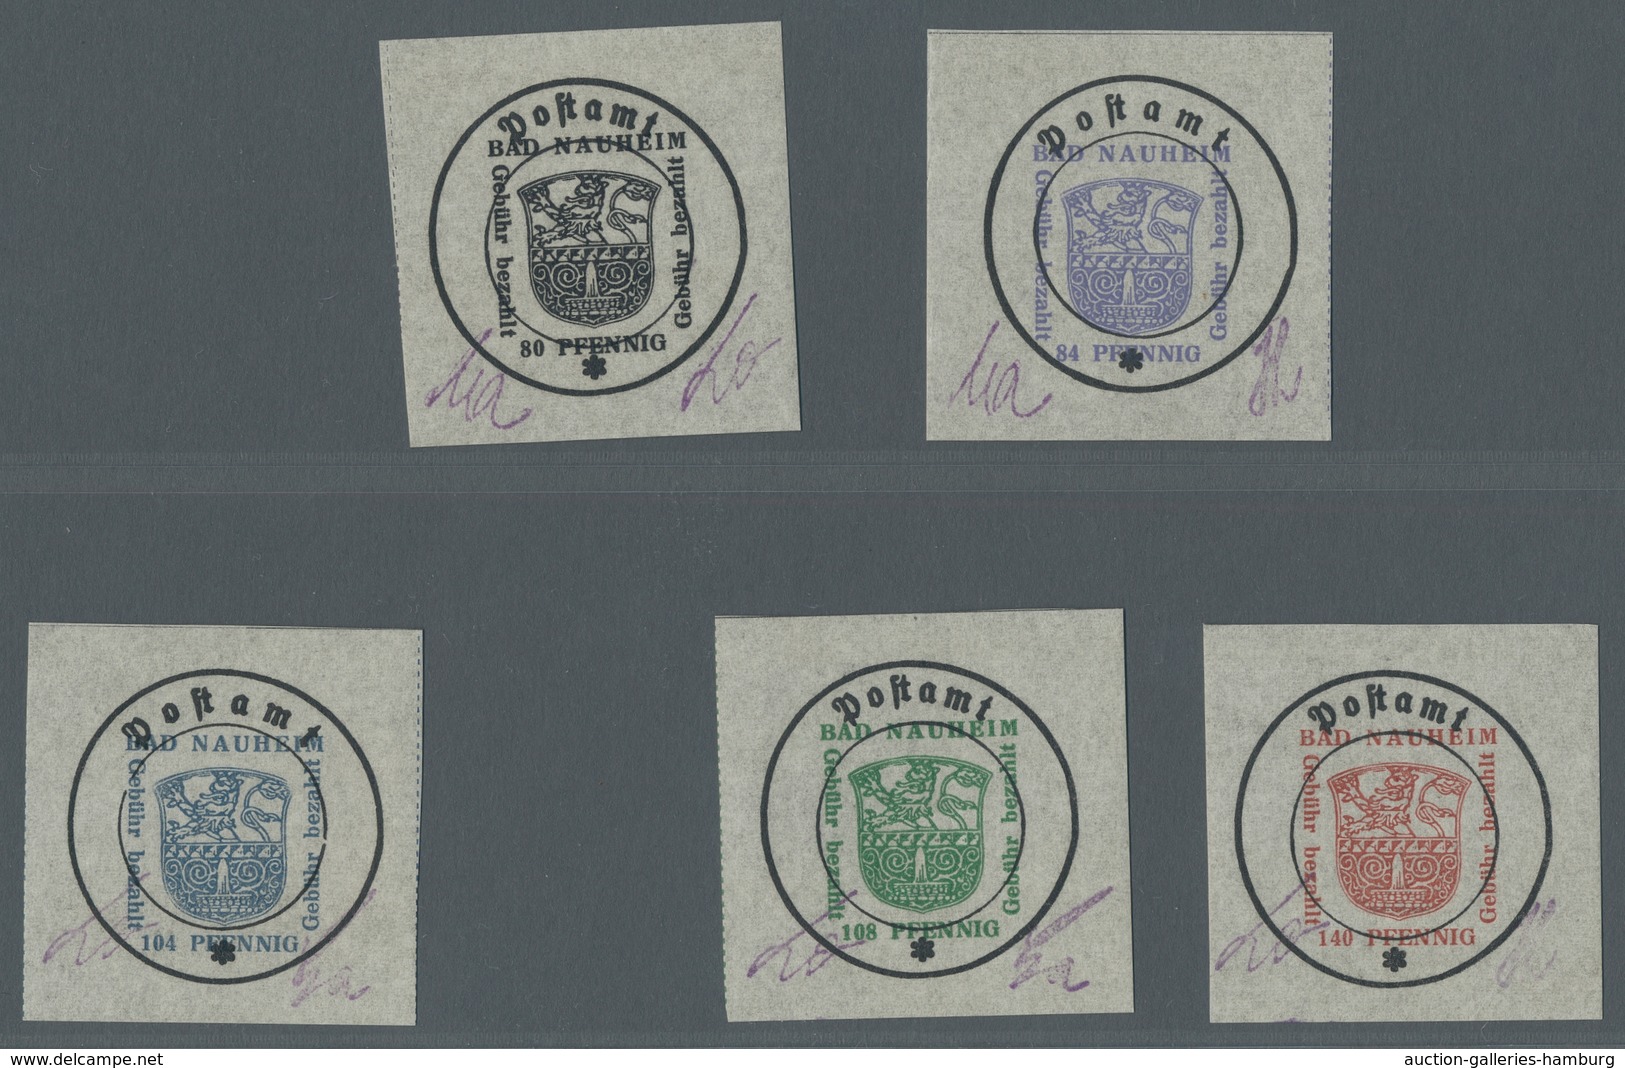 Deutsche Lokalausgaben ab 1945: Bad Nauheim; Postverschlußzettel auf grauem Papier 5 Werte sowie der